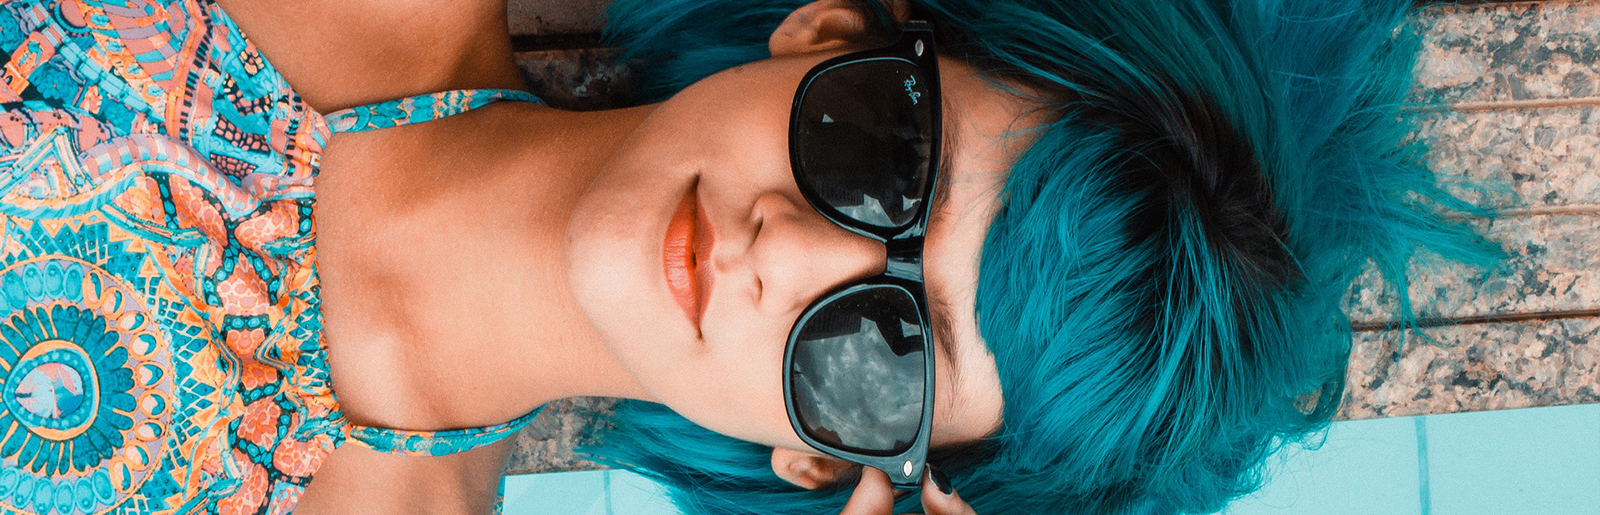 Jeune Femme aux cheveux bleus portant des lunettes de soleil